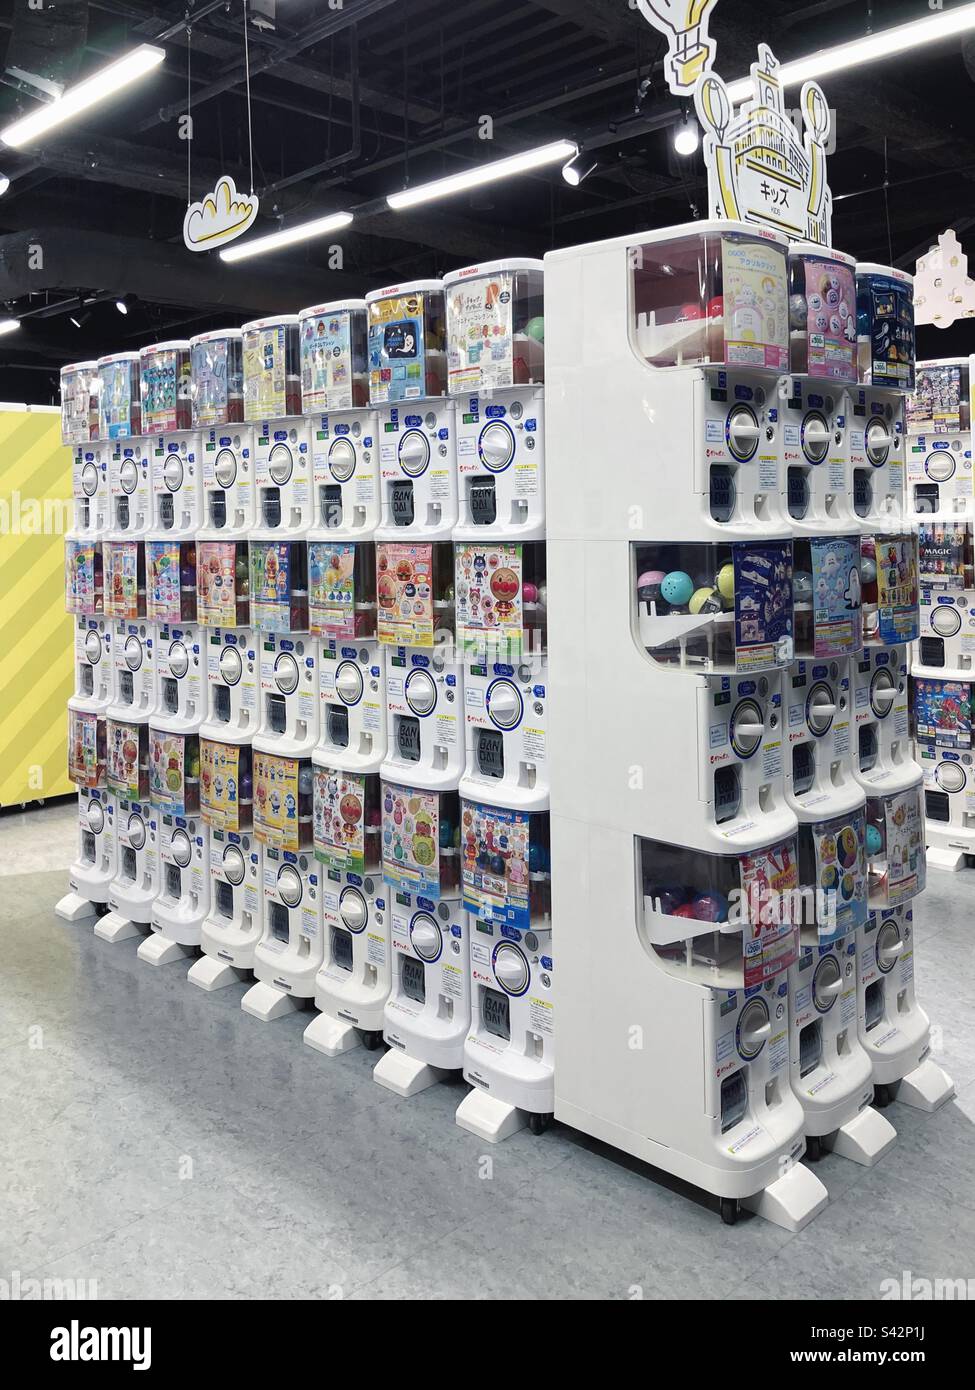 Macchine Gashapon nel grande magazzino Gashapon di recente apertura Ikebukuro, Tokyo, Giappone, il più grande magazzino Gashapon del mondo a Sunshine City, contenente 3000 macchine giocattolo a capsule. Foto Stock